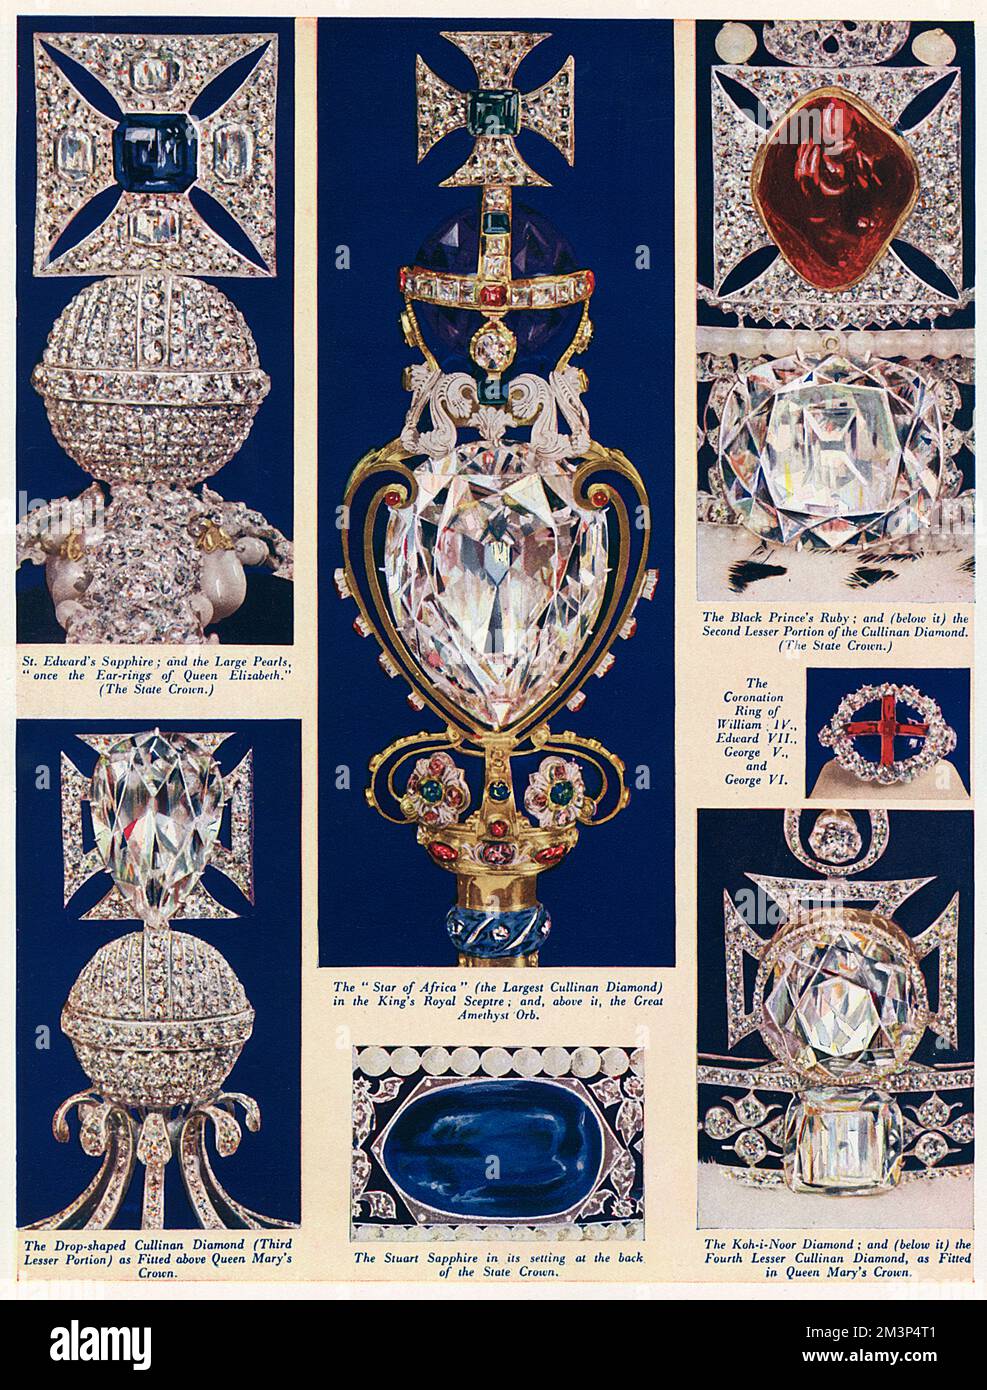 Seite von The Sketch mit einigen der berühmten und unbezahlbaren Juwelen, die die Krönungsregalie von König George VI. Im Jahr 1937 bildeten. St. Edwards Sapphire (oben links) in der Staatskrone soll im Krönungsring von Edward dem Konfessor, dem Stern von Africe (oben Mitte), Ist Teil des Cullinan Diamond, der 1905 in der Premier Mine in Pretoria gefunden wurde - das größte Stück davon befindet sich im königlichen Zepter. Der Ruby des Schwarzen Prinzen (oben rechts) in der Staatskrone gehörte einst dem König von Granada im 14.. Jahrhundert und der Stuart Sapphire (Mitte unten) gehörte wahrscheinlich König Charl Stockfoto